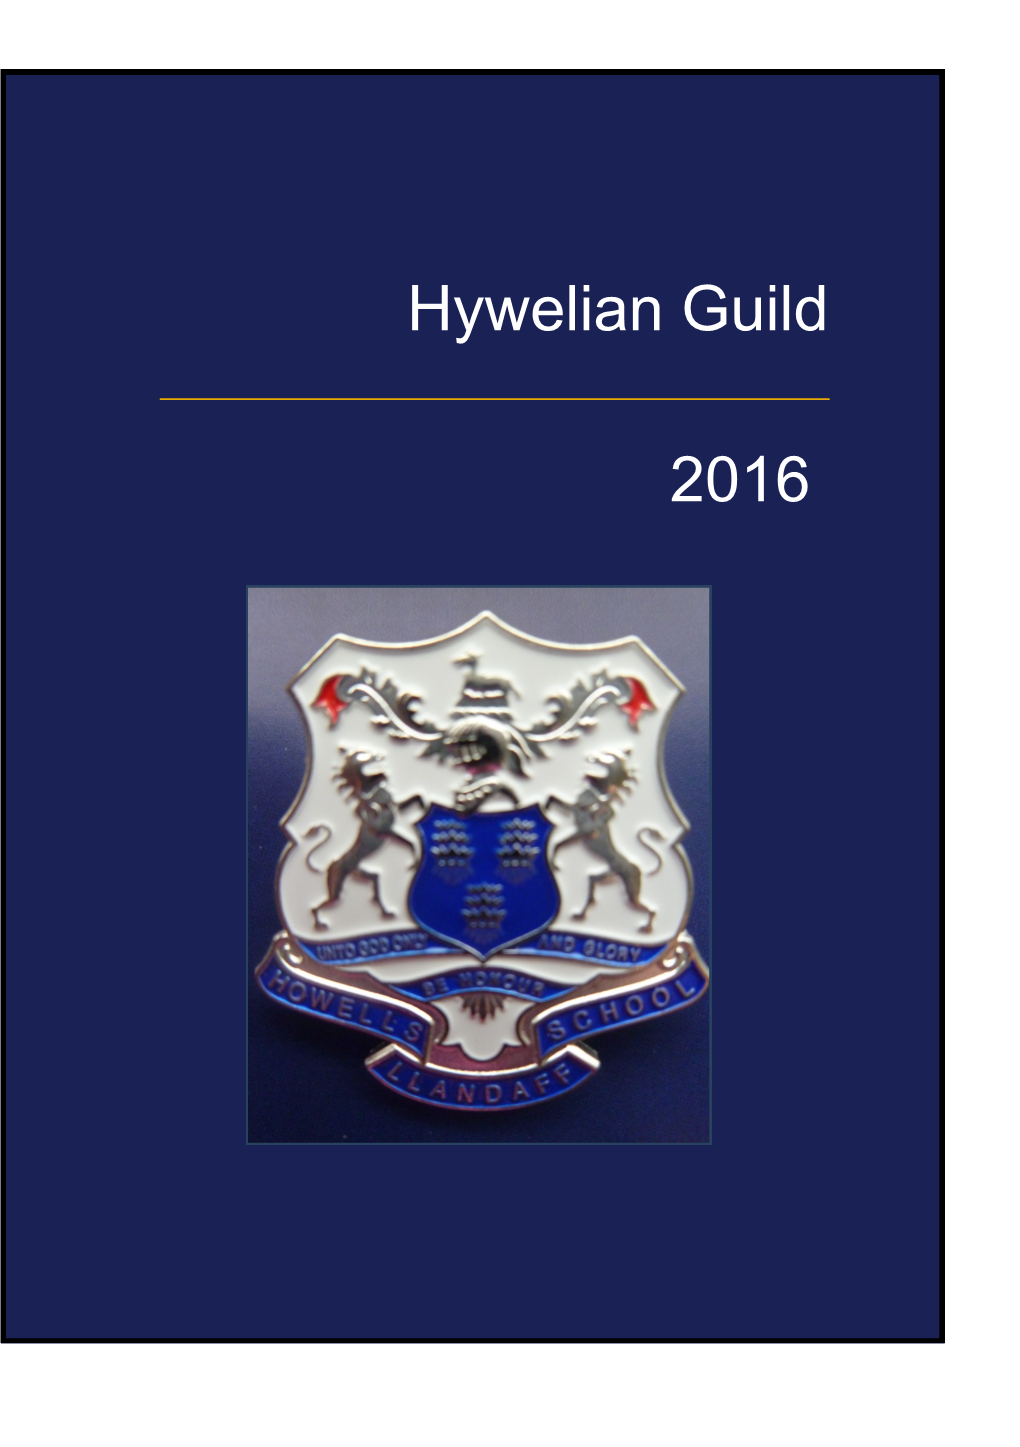 Hywelian Guild 2016